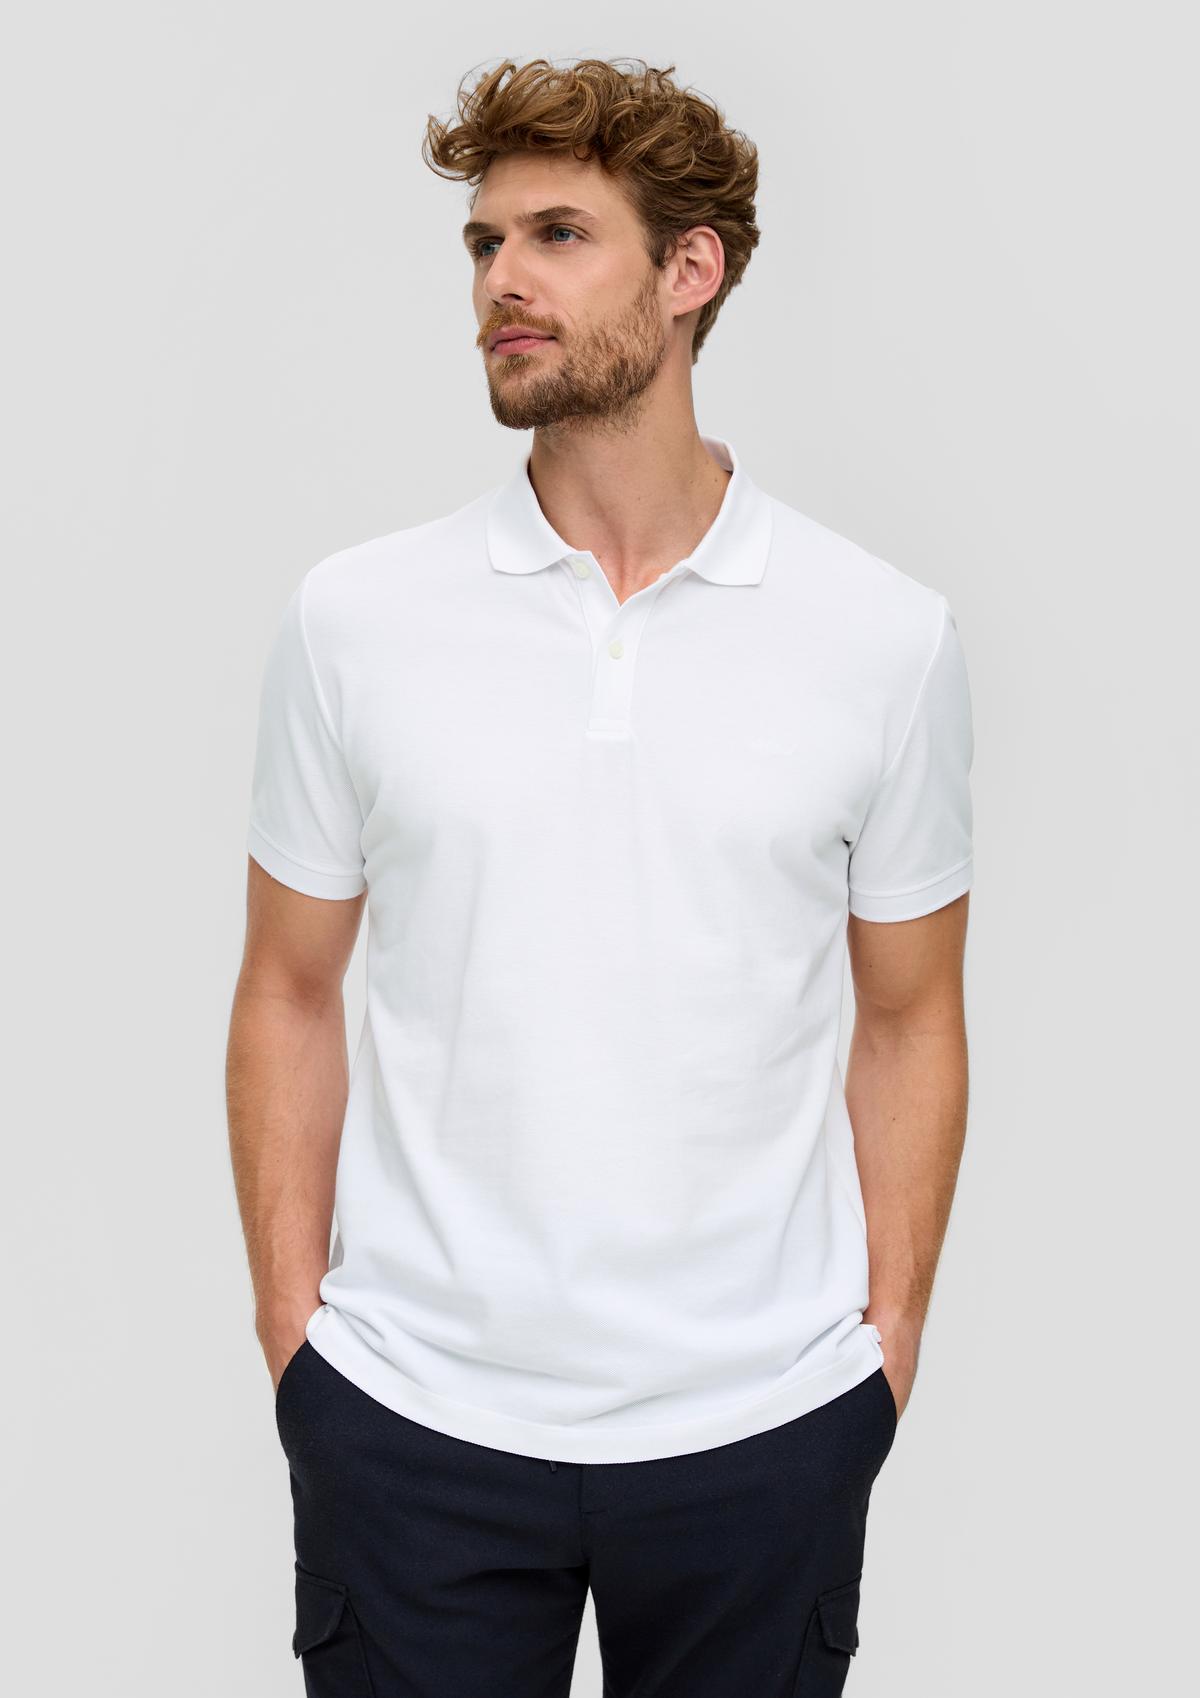 aus weiß Baumwollpiqué - Poloshirt